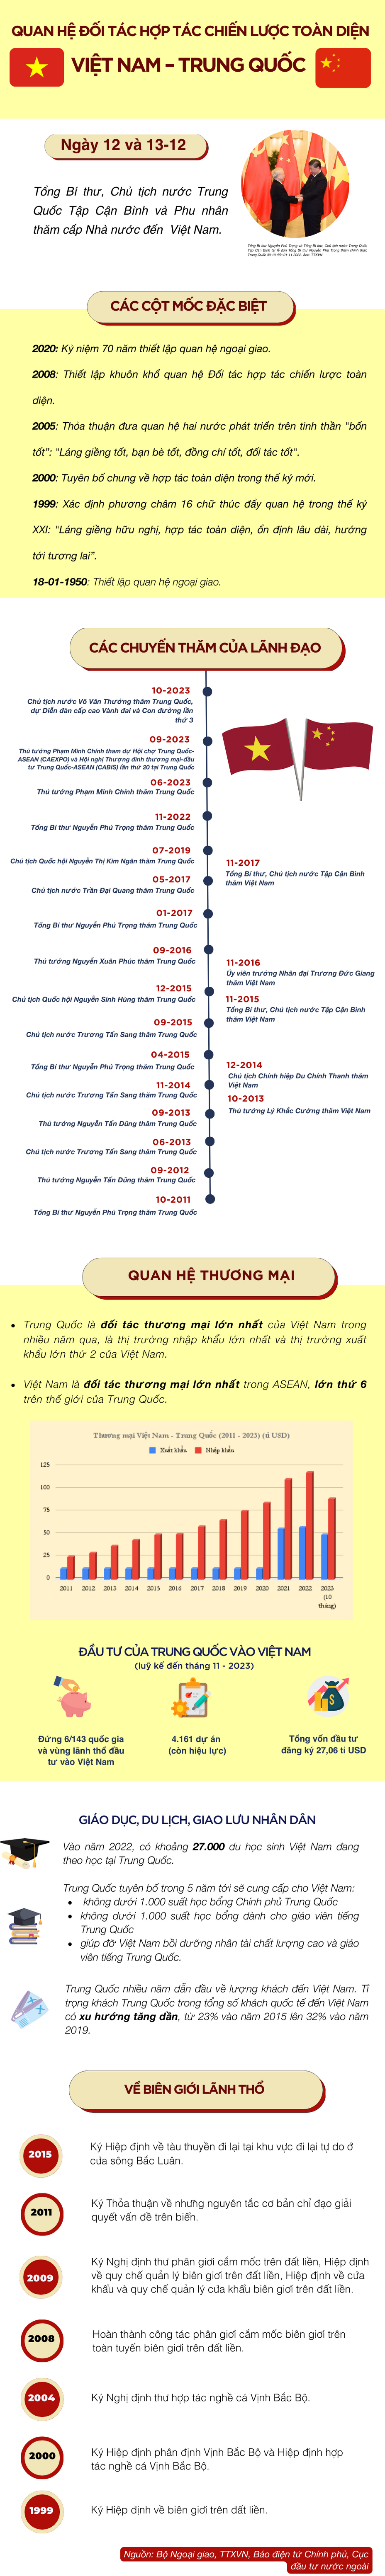 Infographic 73 năm quan hệ Việt-Trung: Tình láng giềng hữu nghị, hợp tác toàn diện ngày càng bền chặt - 1